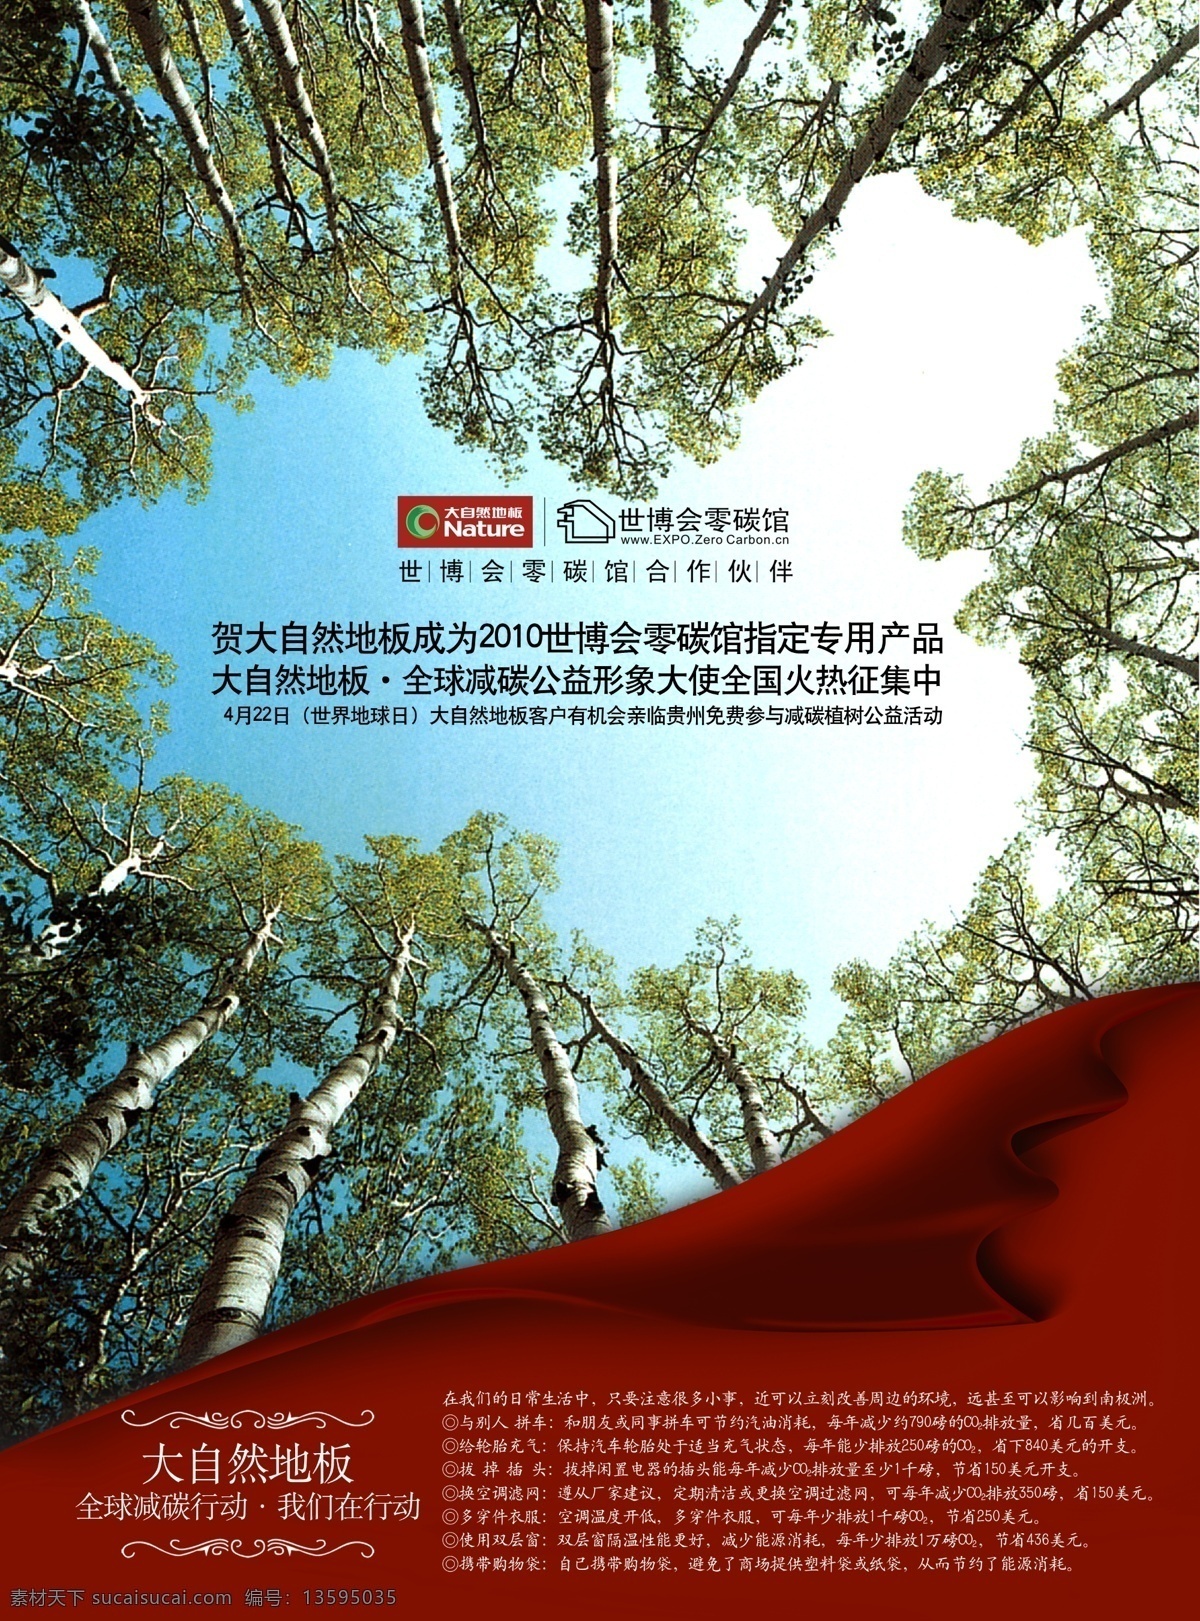 大自然 地板 公益 形 海报 大自然地板 森林 专用产品 简介 设计风格 公益形像 大树 海报图片 广告图片 分层素材 psd素材 宣传图 红色